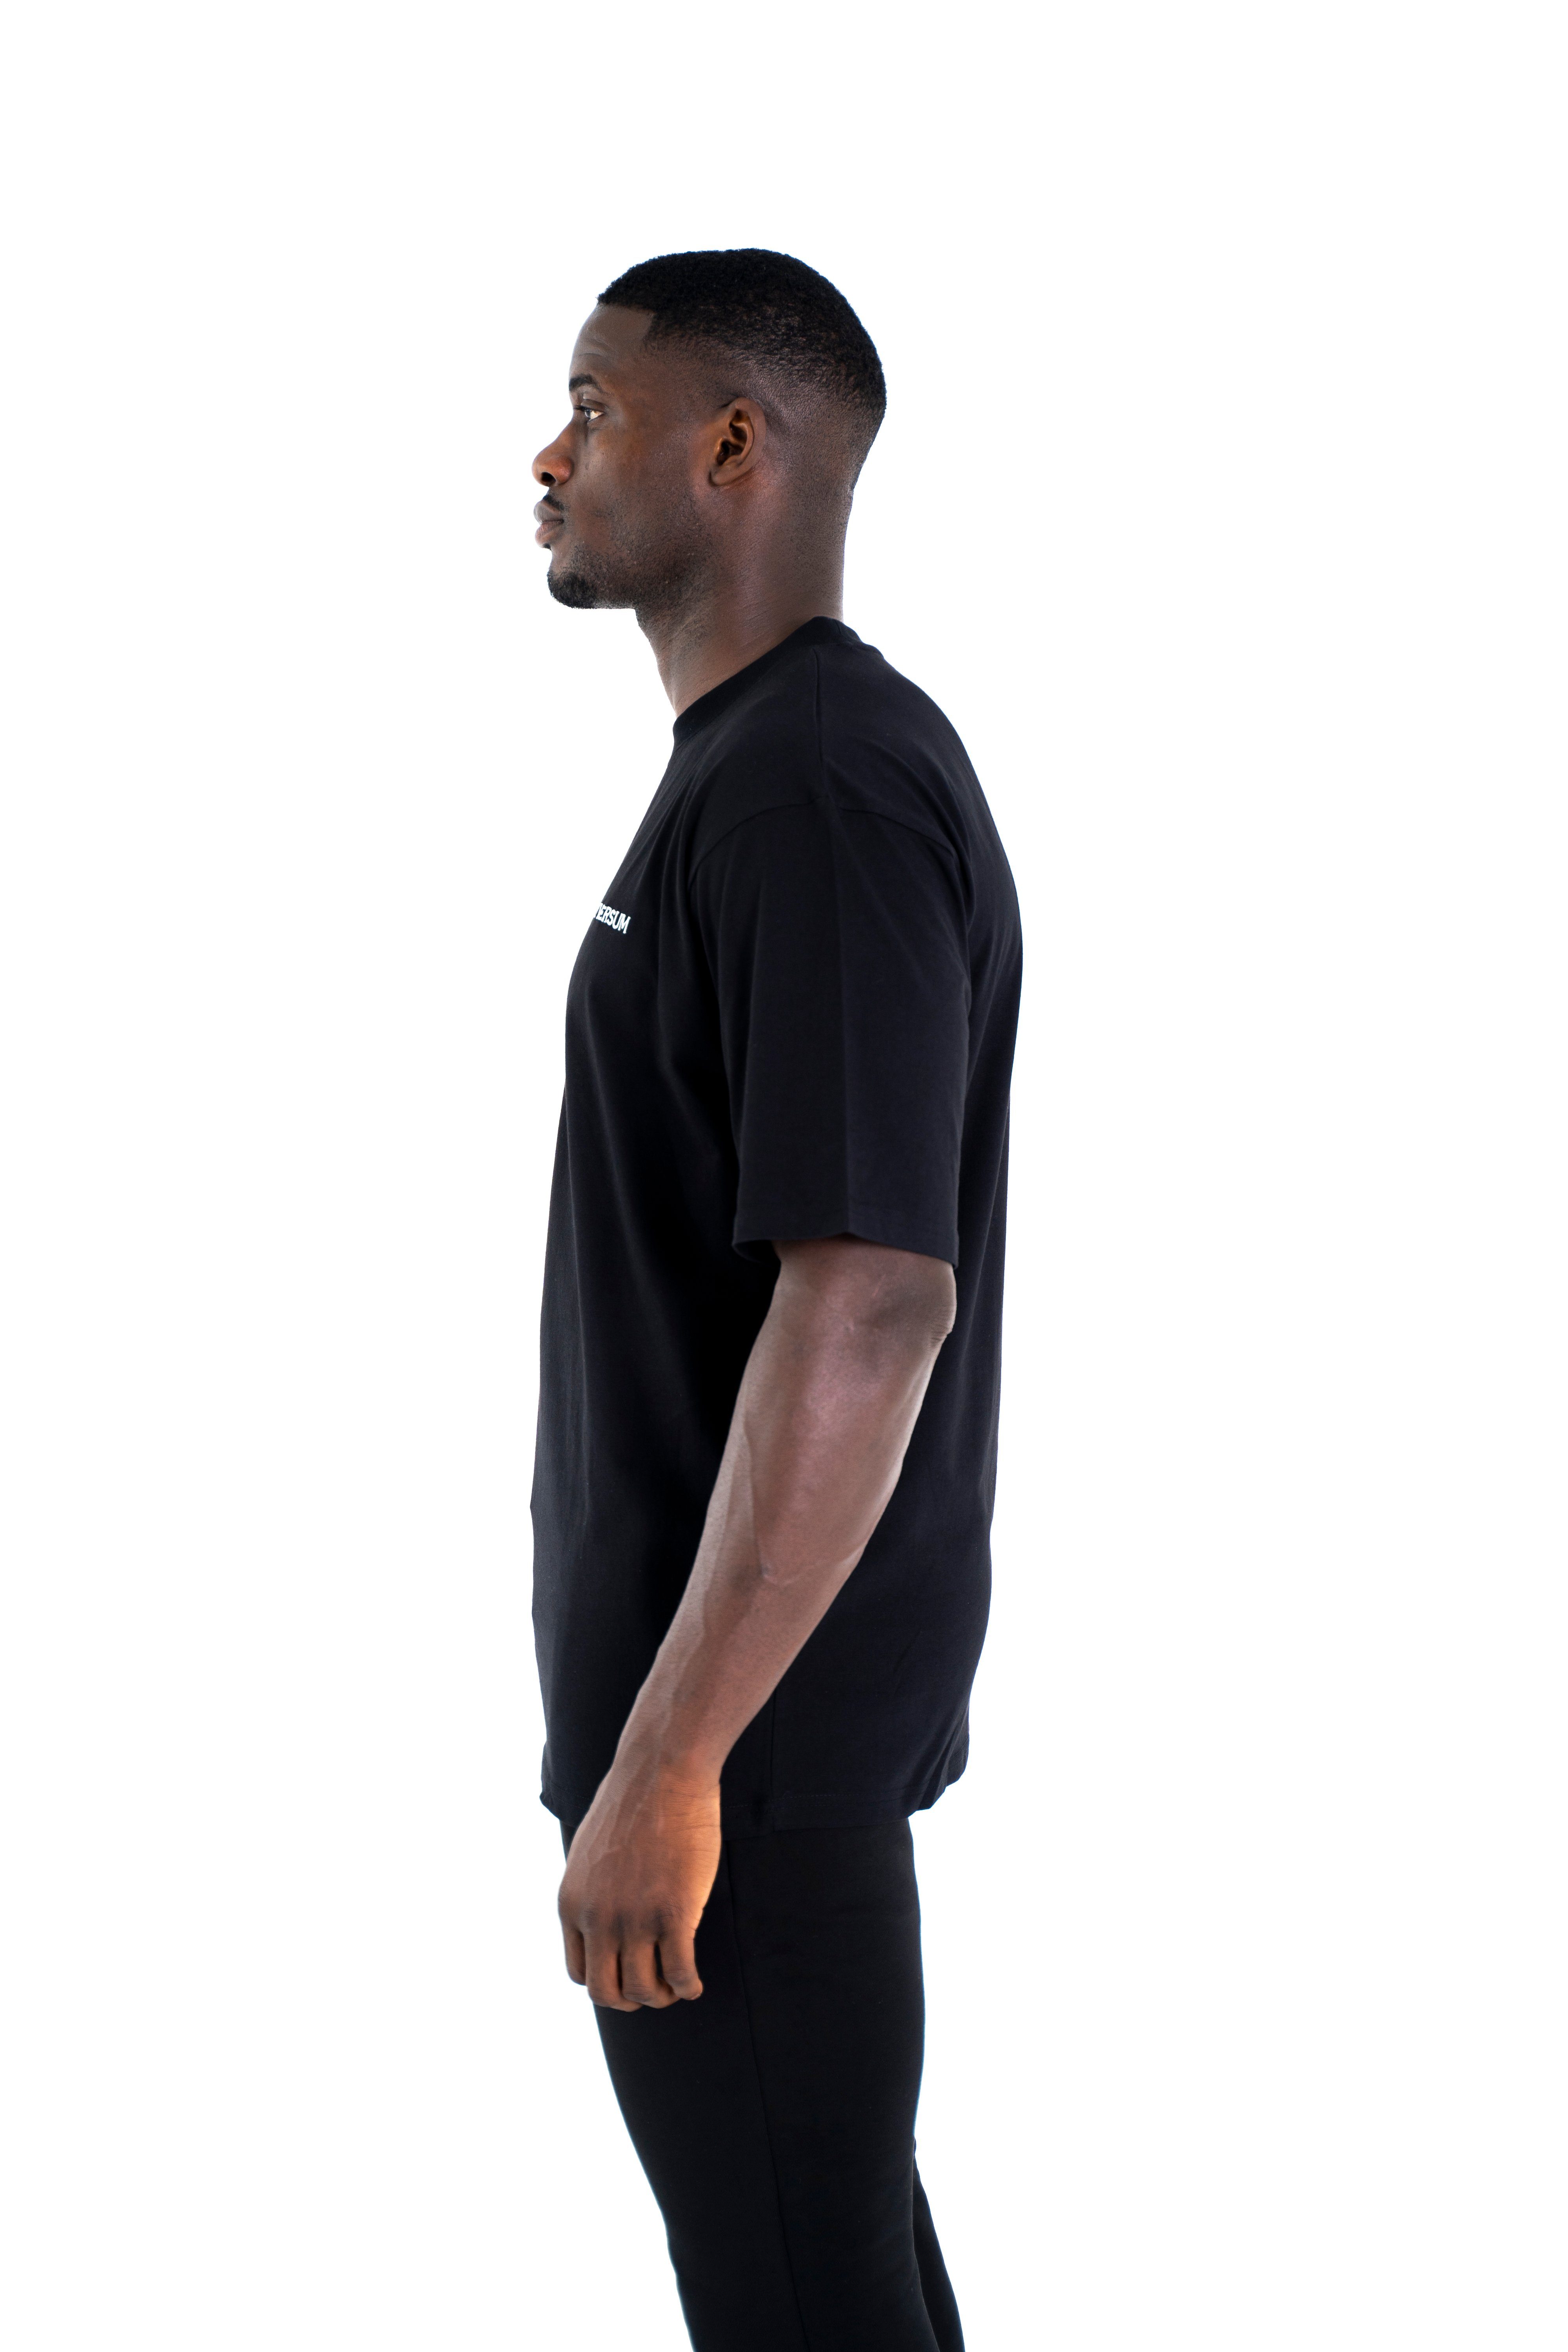 Oversize Sportwear T-Shirt Rundhalsausschnitt, Universum Cotton Schwarz Modern Shirt, Baumwoll C-Neck 100% T-Shirt